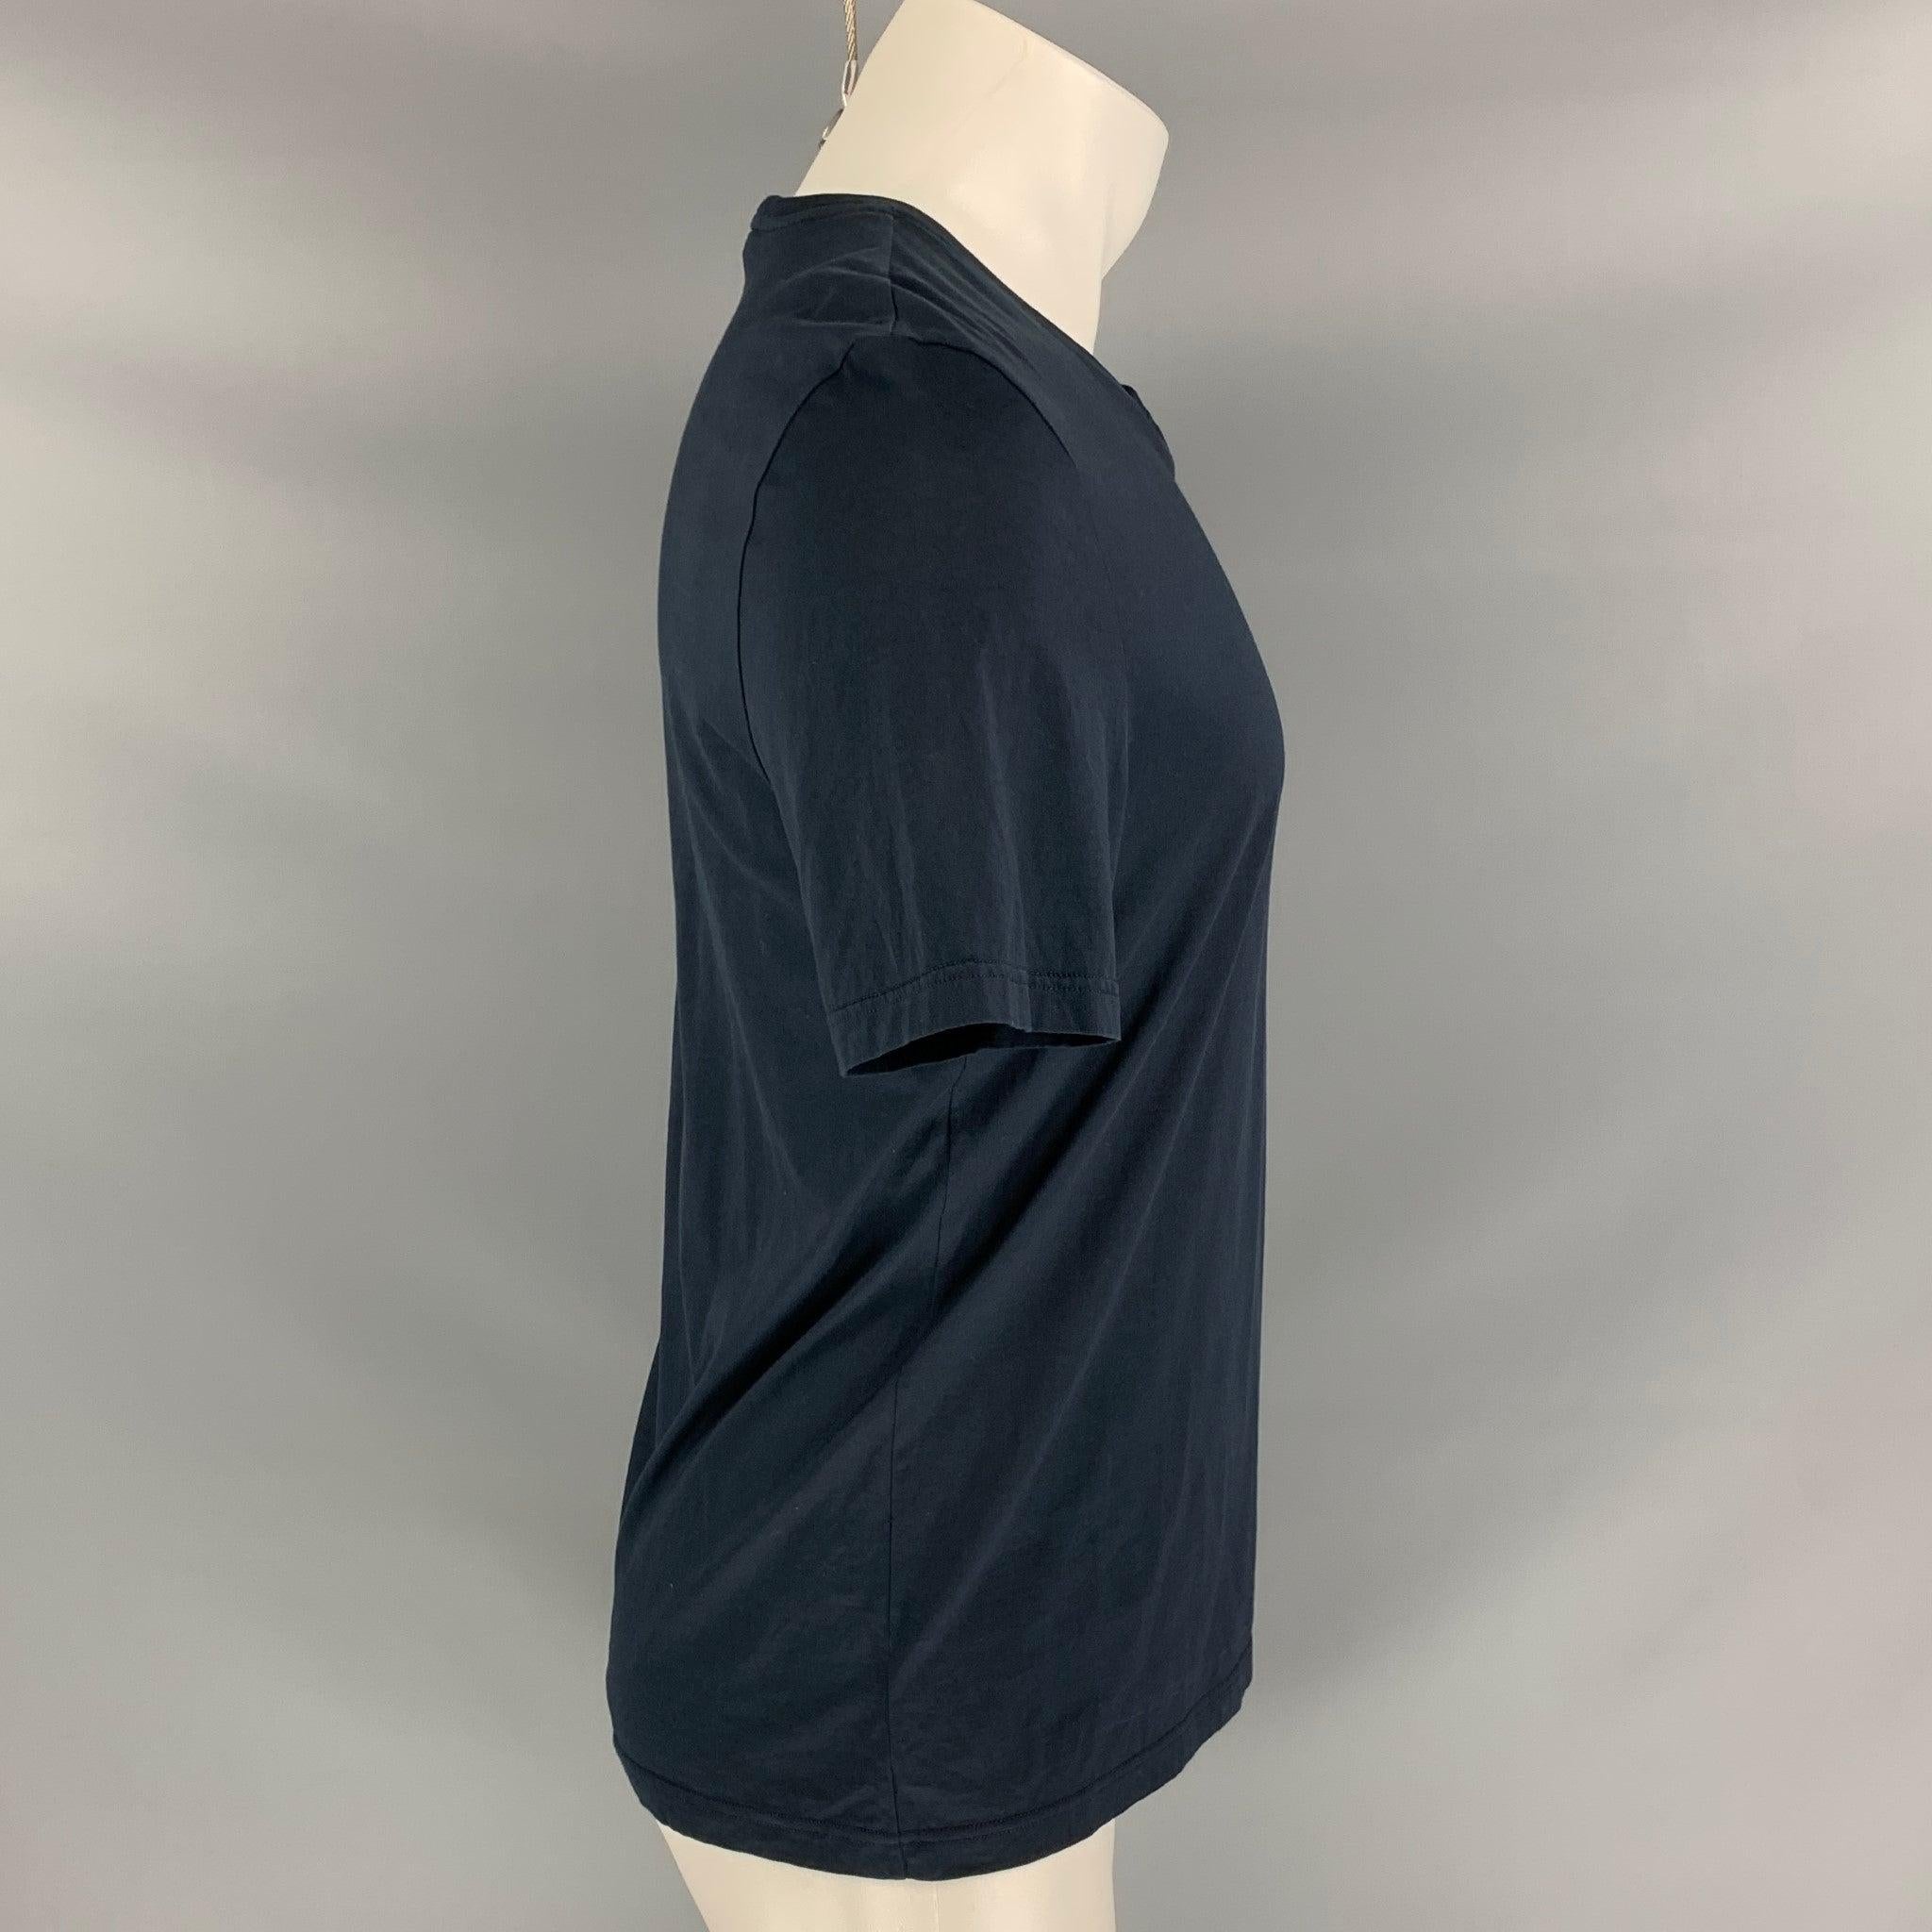 Le t-shirt PRORSUM Fall 2016 de Burberry est décliné en coton marine et sarcelle et présente une poche miroir Rajastani ainsi qu'un col ras-du-cou. Fabriquées en Italie. Très bien
Etat d'occasion. 

Marqué :   S 

Mesures : 
 
Épaule : 18 pouces 